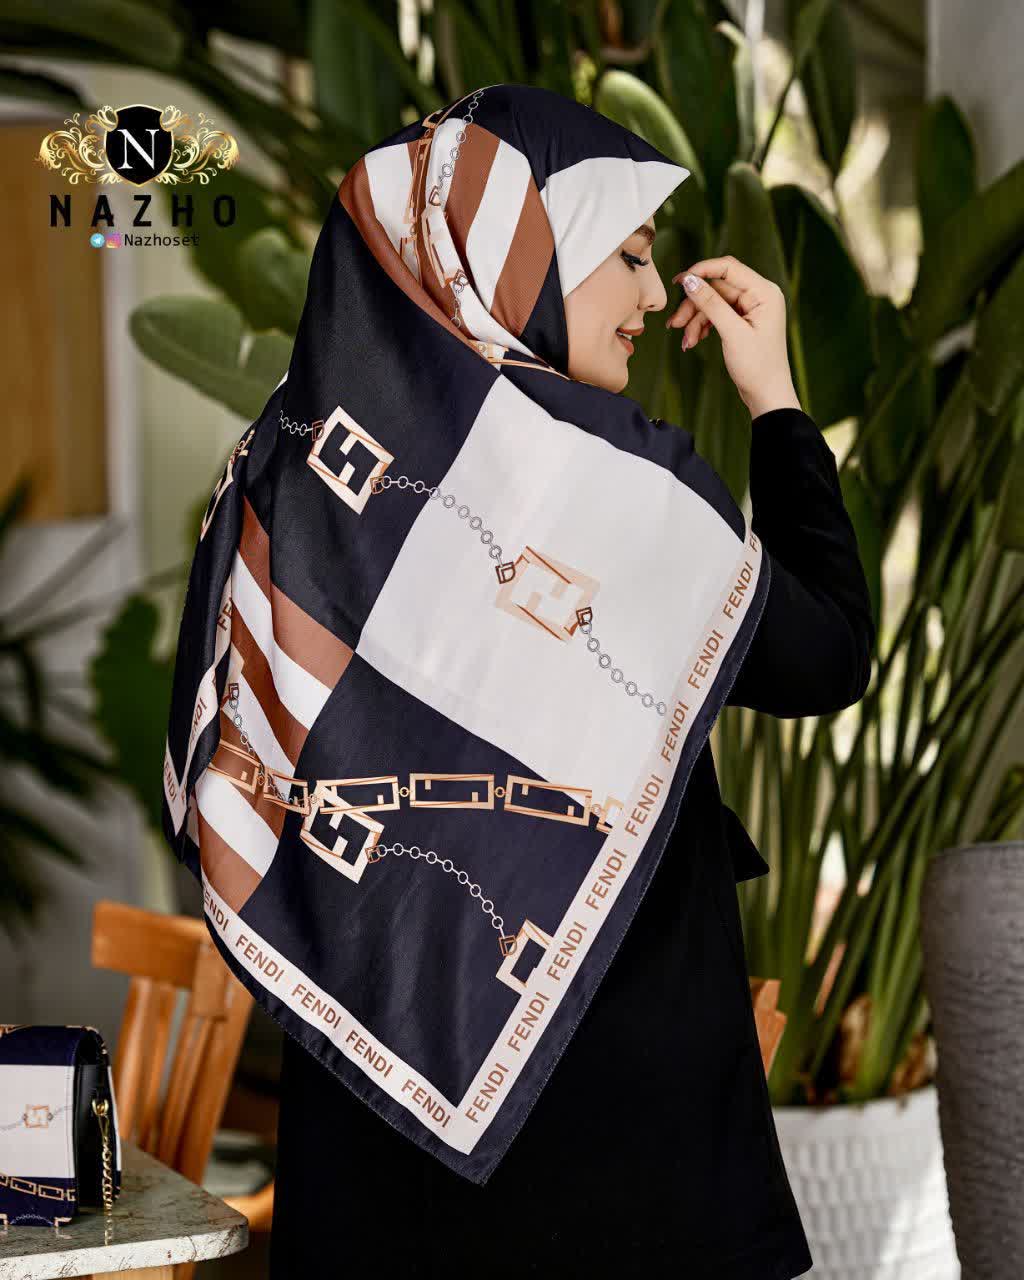 ست کیف و روسری زنانه با کیف نیمگرد رنگ مشکی قهوه ای زنجیری ارسال رایگان کد na1370